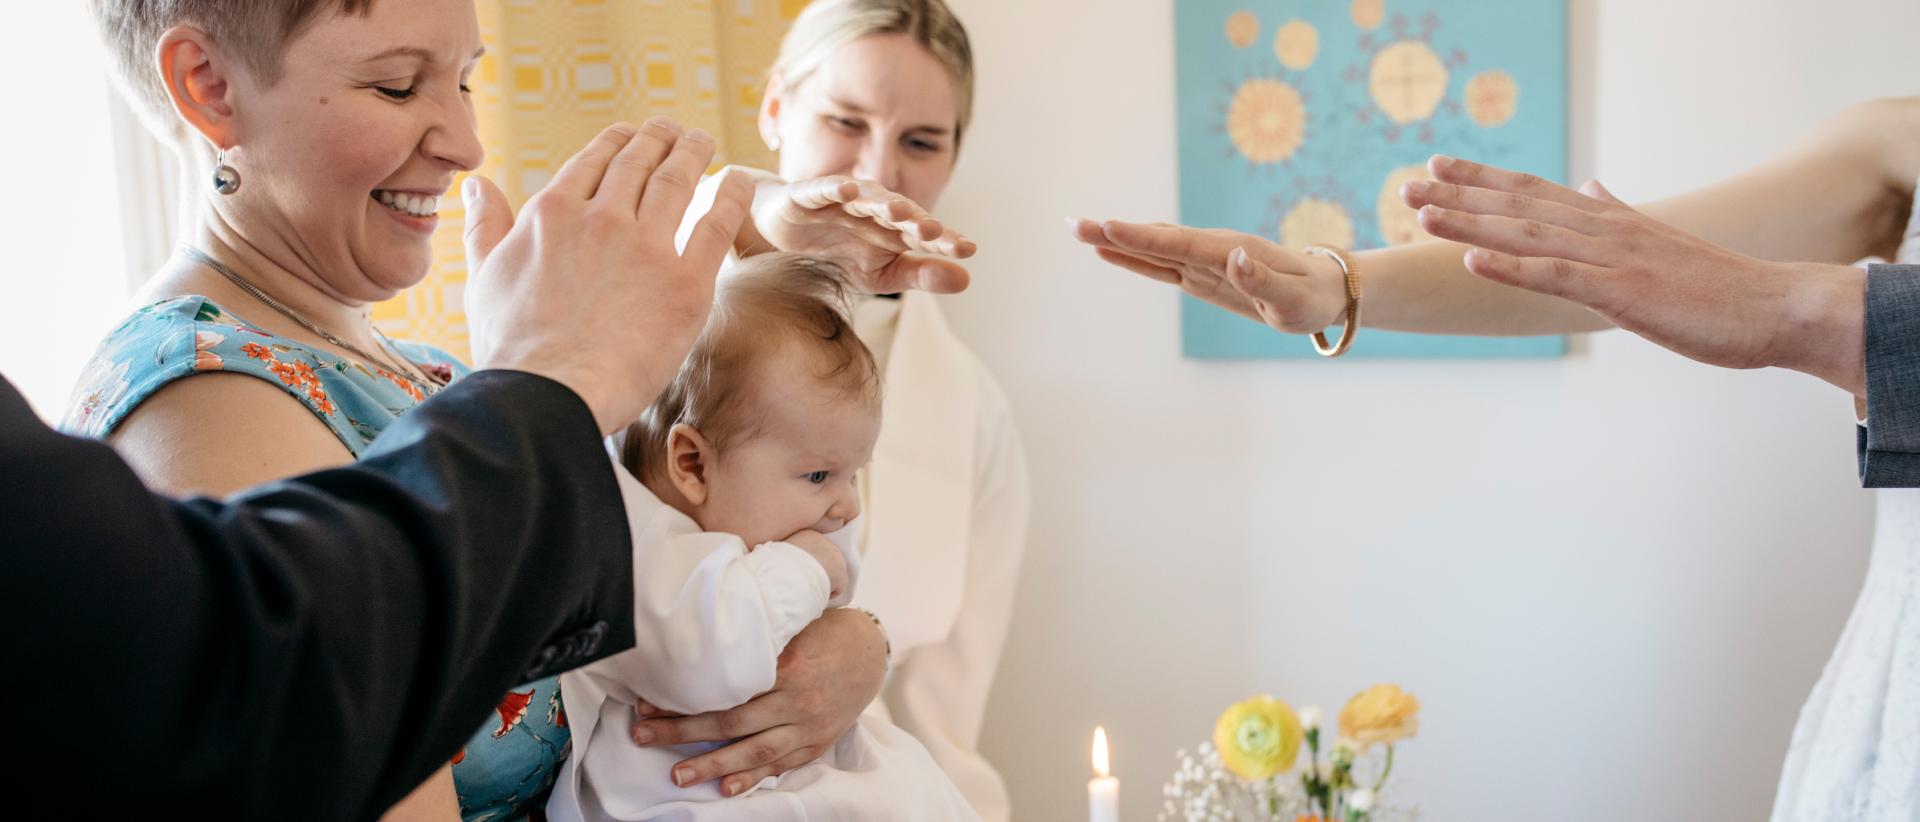 Kummit siunaamassa vauvaa kotikasteella kädet kohotettuina. Kuva Elina Manninen.